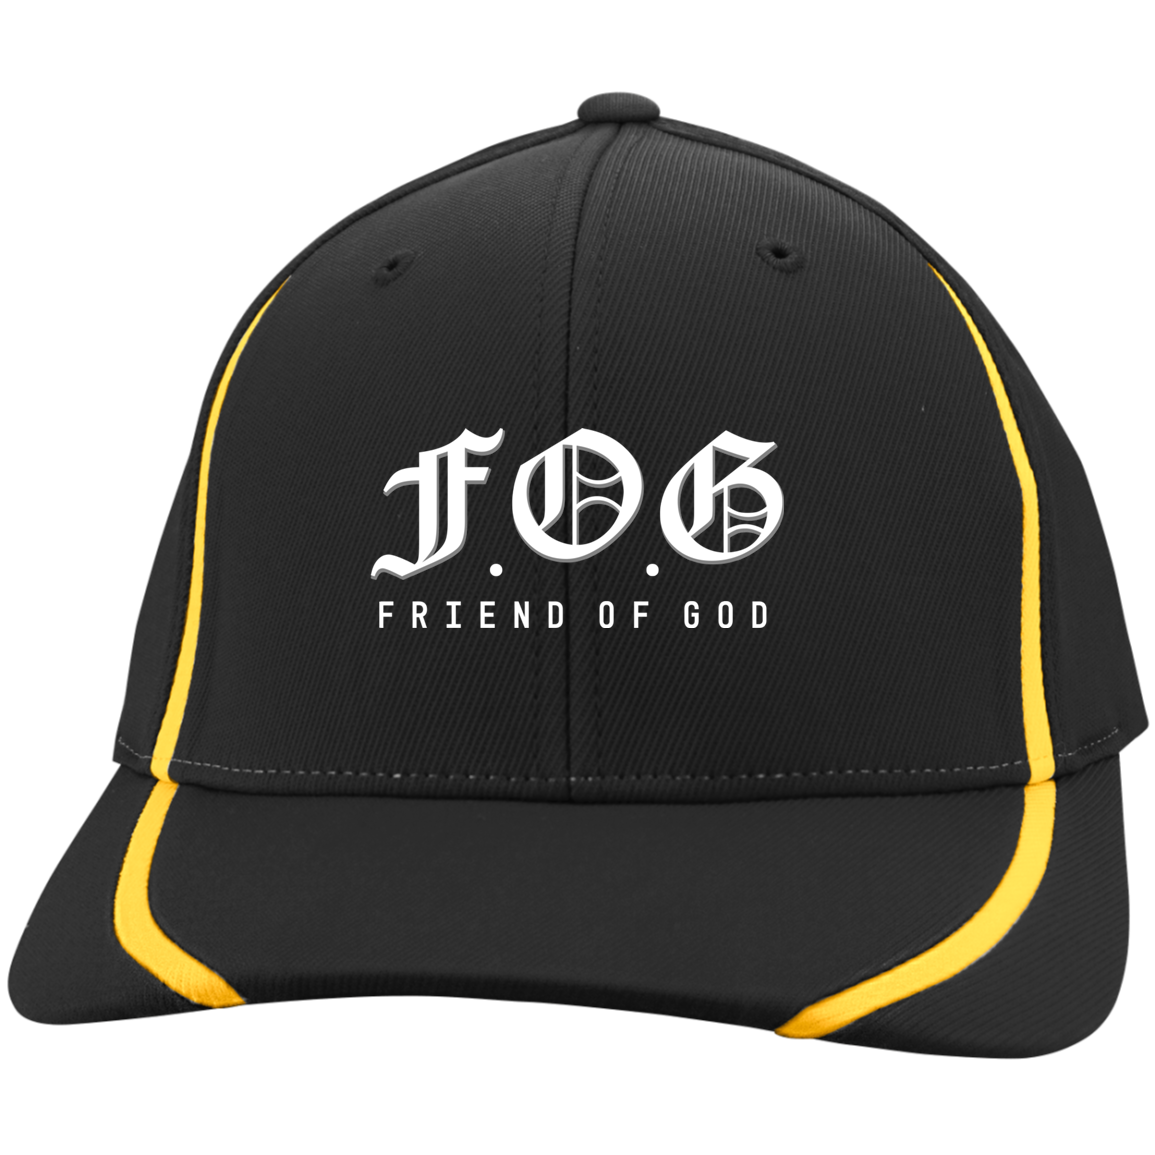 Friend of God Flexfit Colorblock Caps/Hats - Covenant-Press